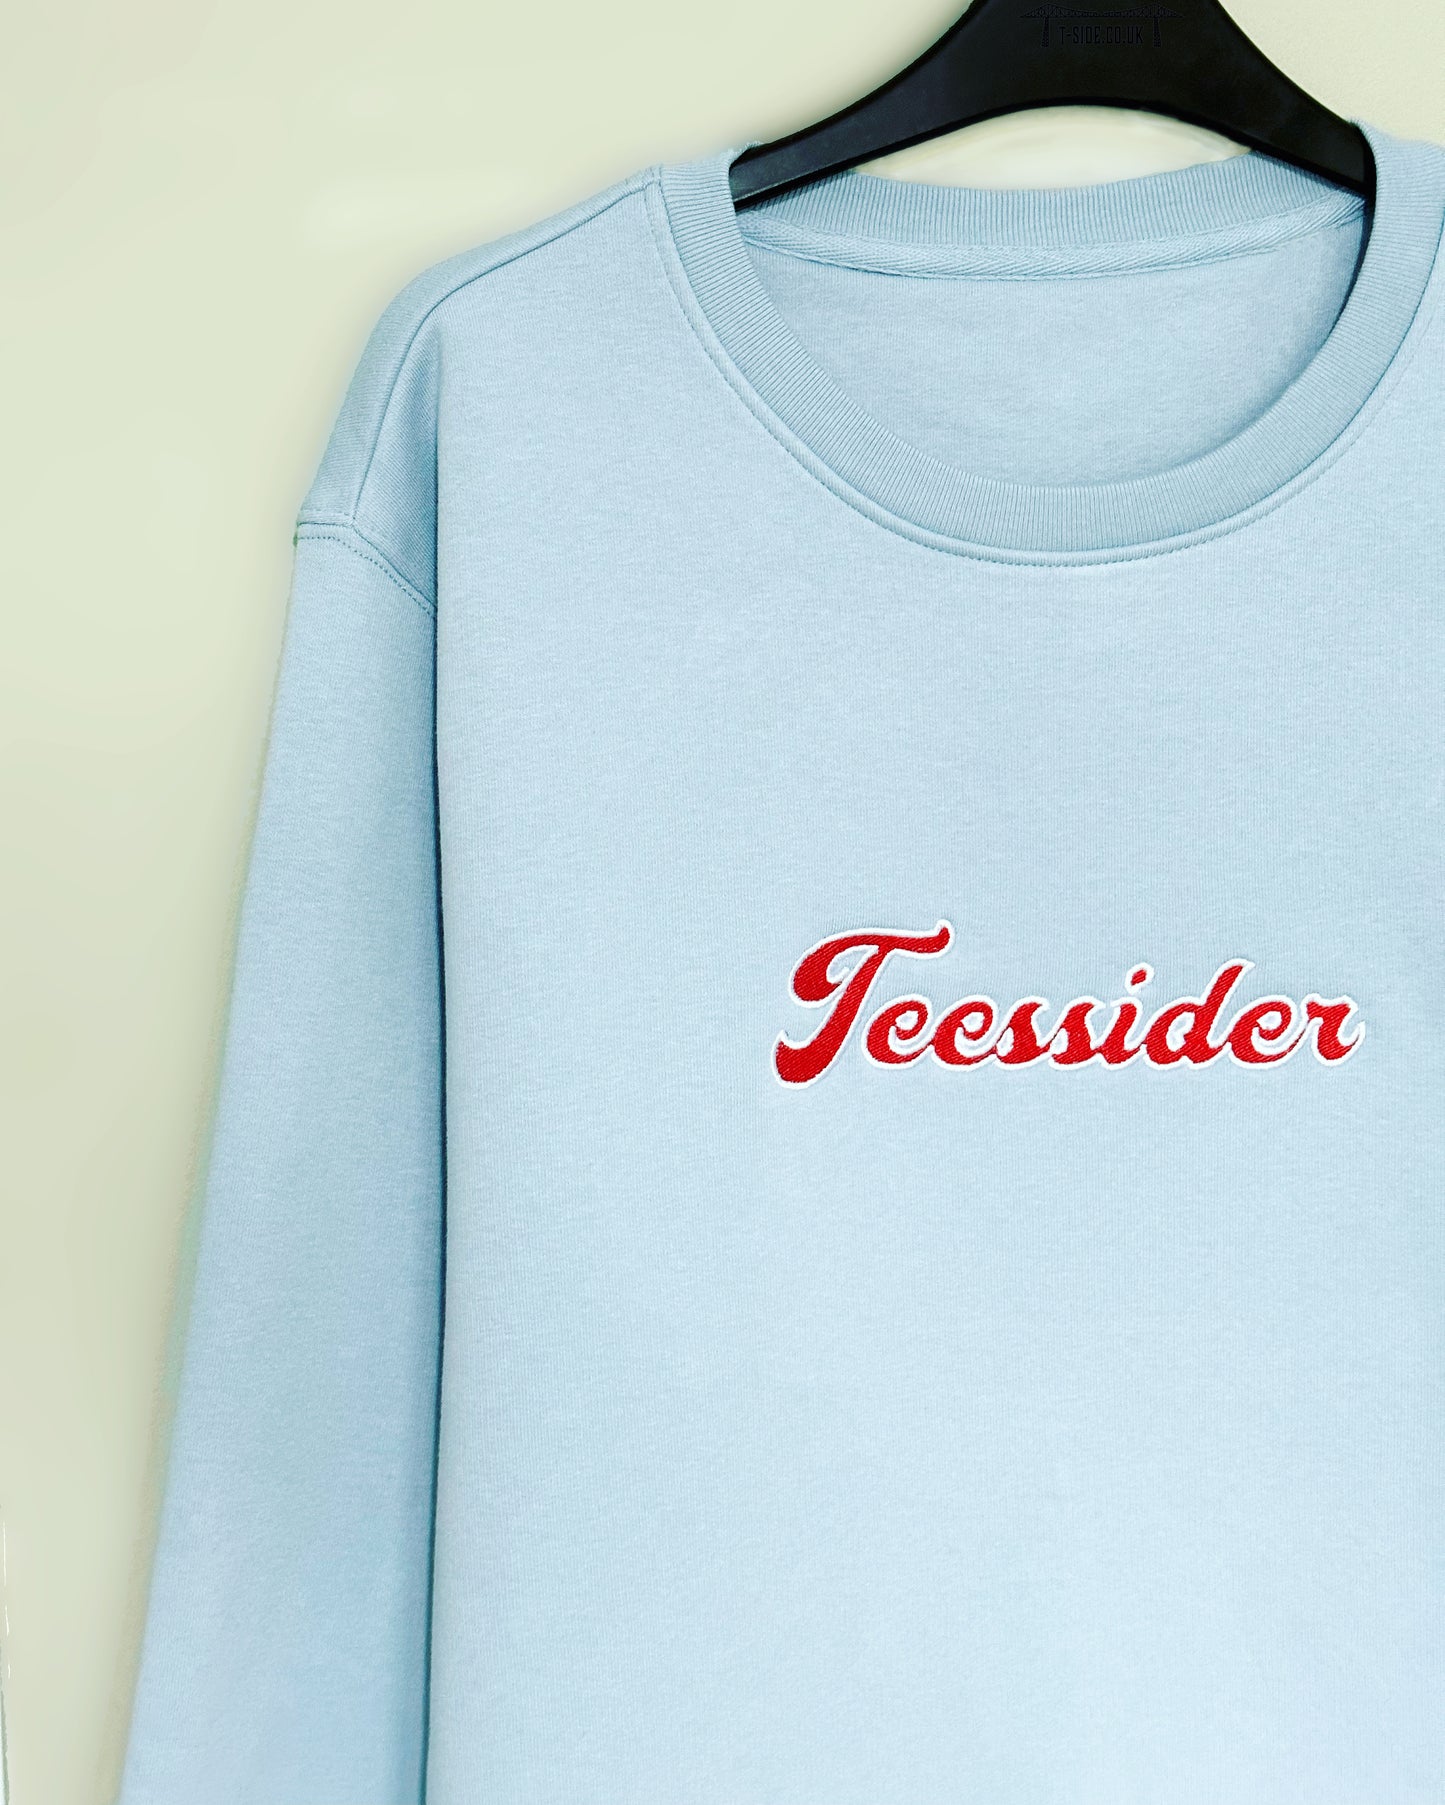 Teessider Embroidered Sweatshirt